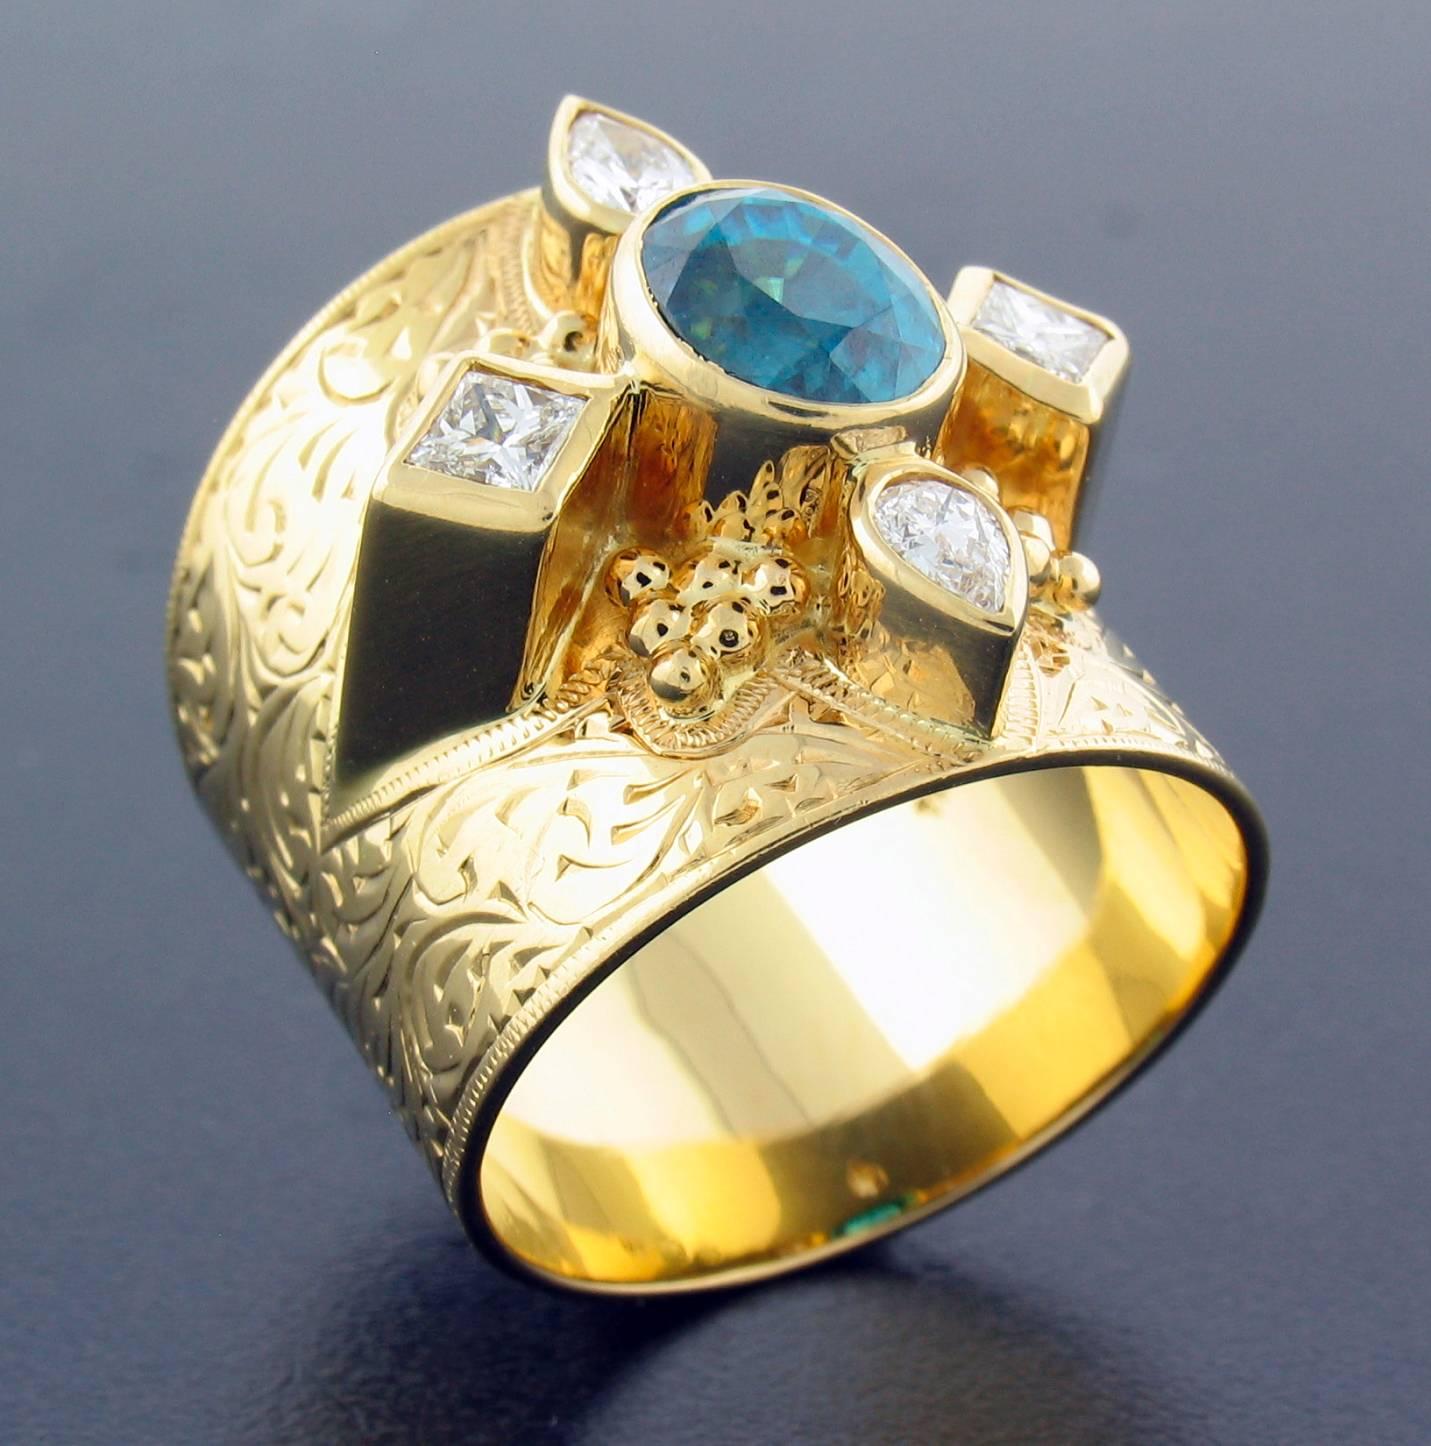 Cette bague a été conçue et réalisée par la célèbre designer Paula Crevoshay.  Elle contient un zircon bleu naturel pesant 2.80 carats, et des diamants pesant 0.52 carats.  Il est entièrement réalisé en or jaune 18k  La taille est approximativement